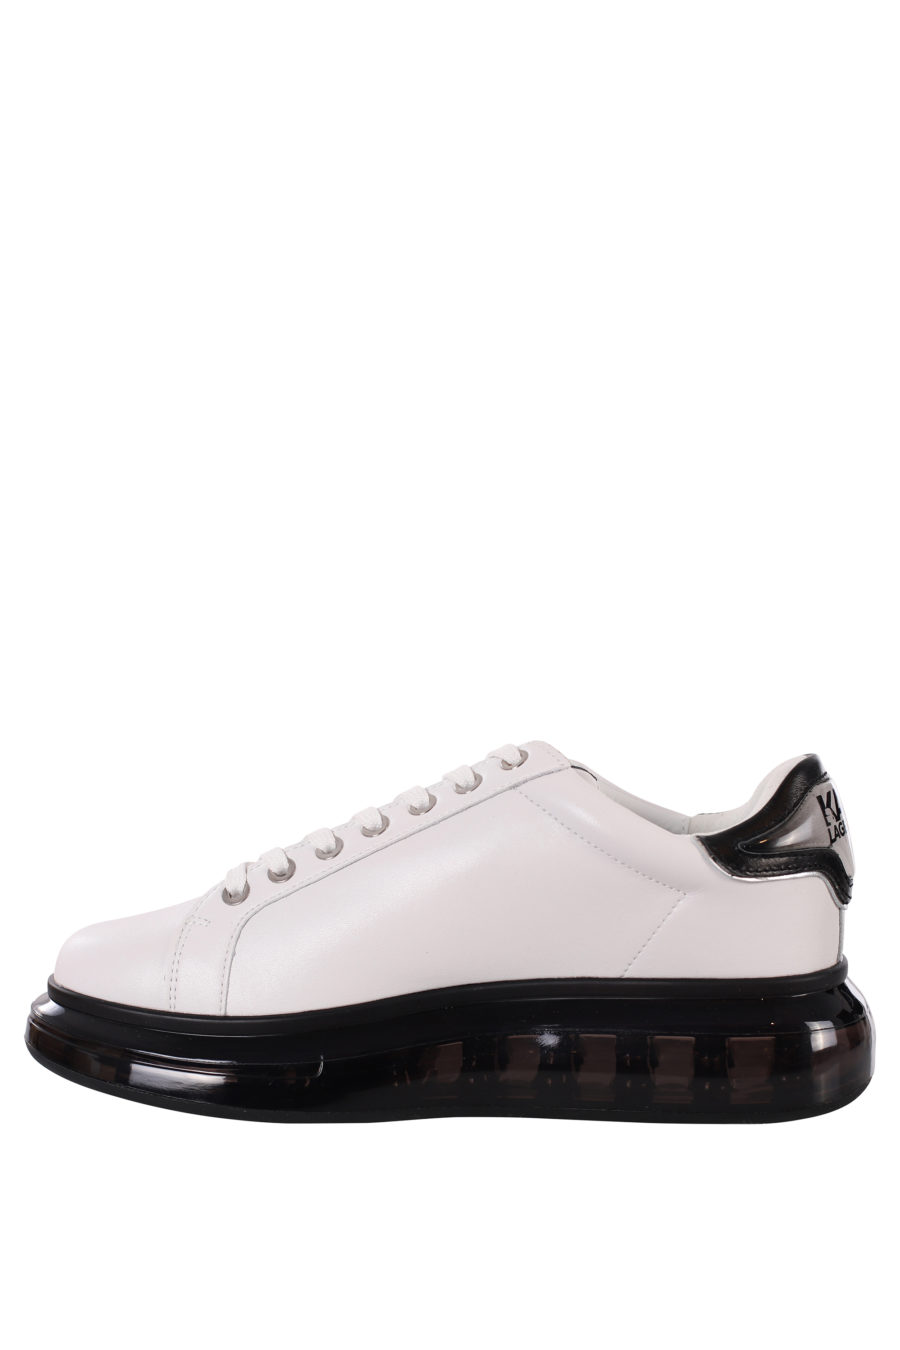 Zapatillas blancas con logo silueta negro y suela negra - IMG 0422